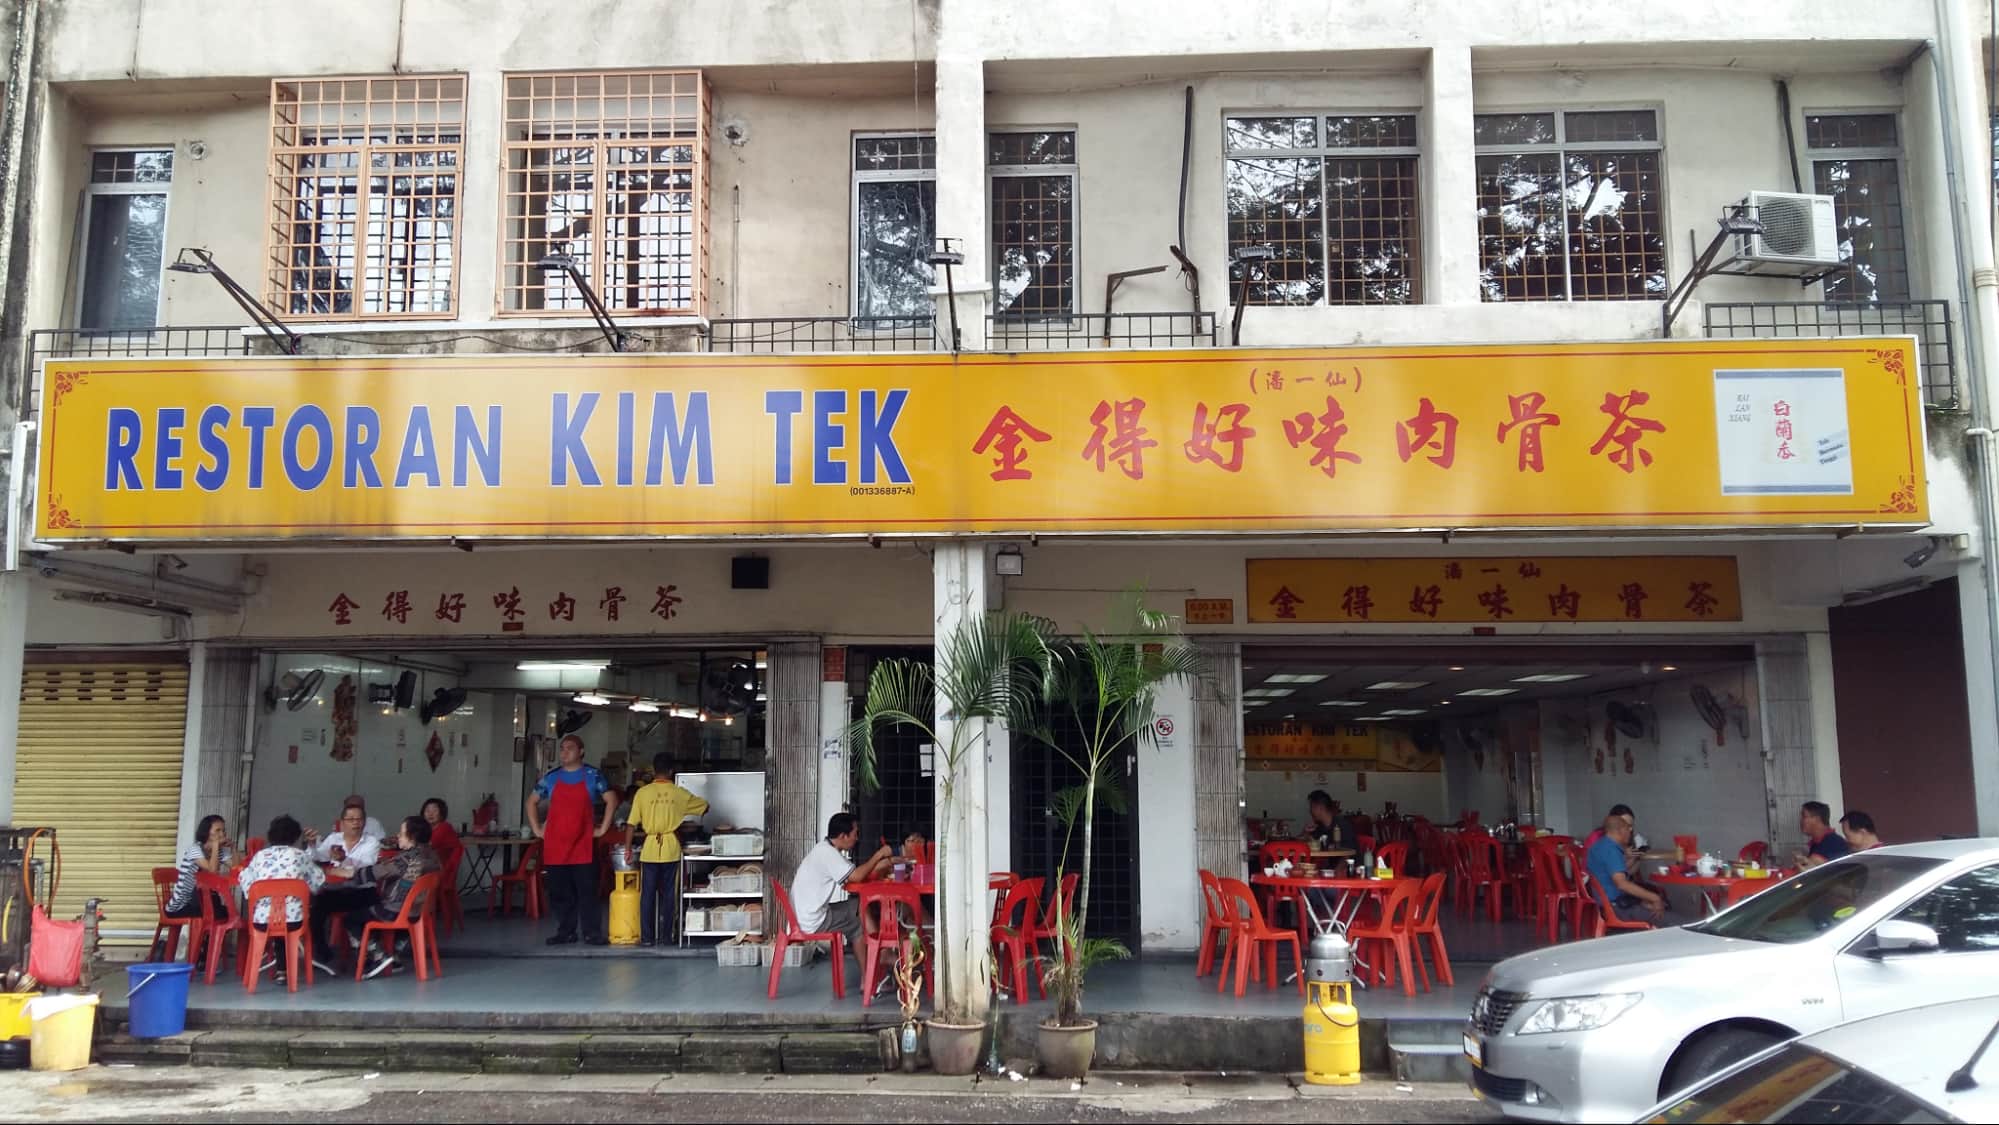 Bak kut teh restaurants in KL - Kim Tek